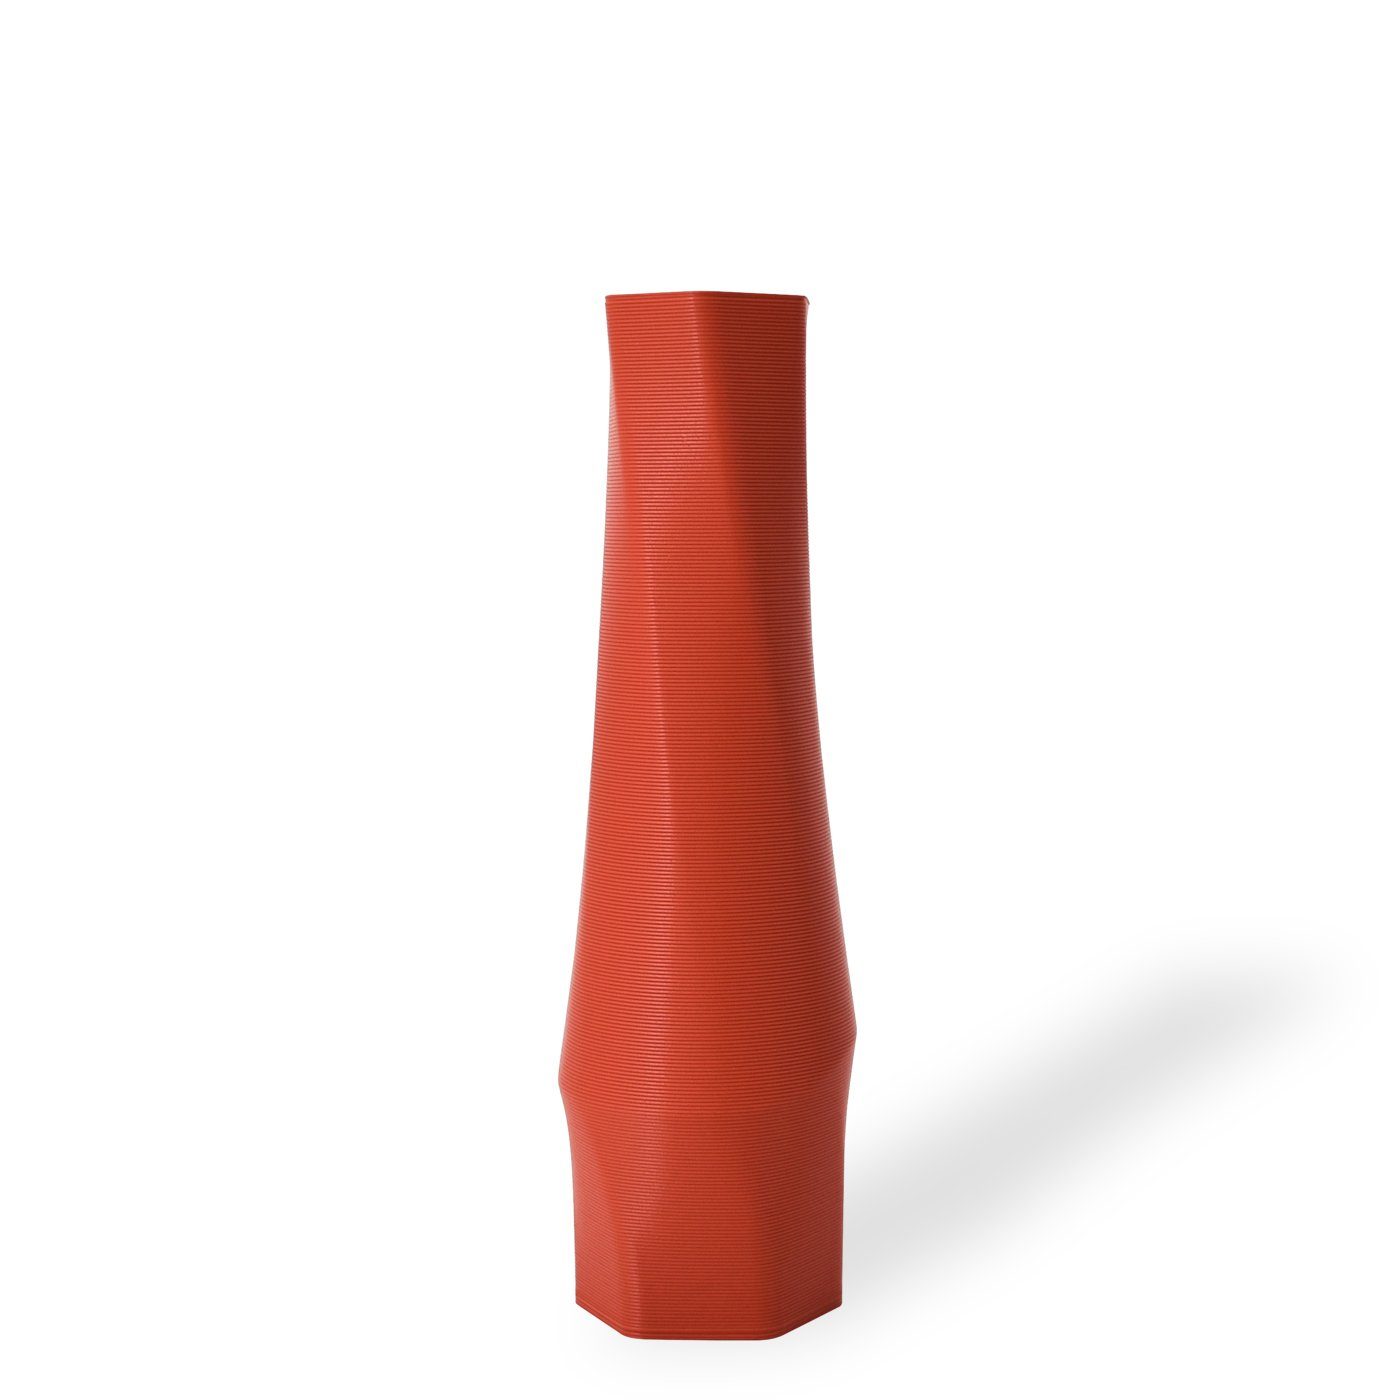 Shapes - Decorations Dekovase the vase - hexagon (basic), 3D Vasen, viele Farben, 100% 3D-Druck (Einzelmodell, 1 Vase), Wasserdicht; Leichte Struktur innerhalb des Materials (Rillung) Terracotta (rot)